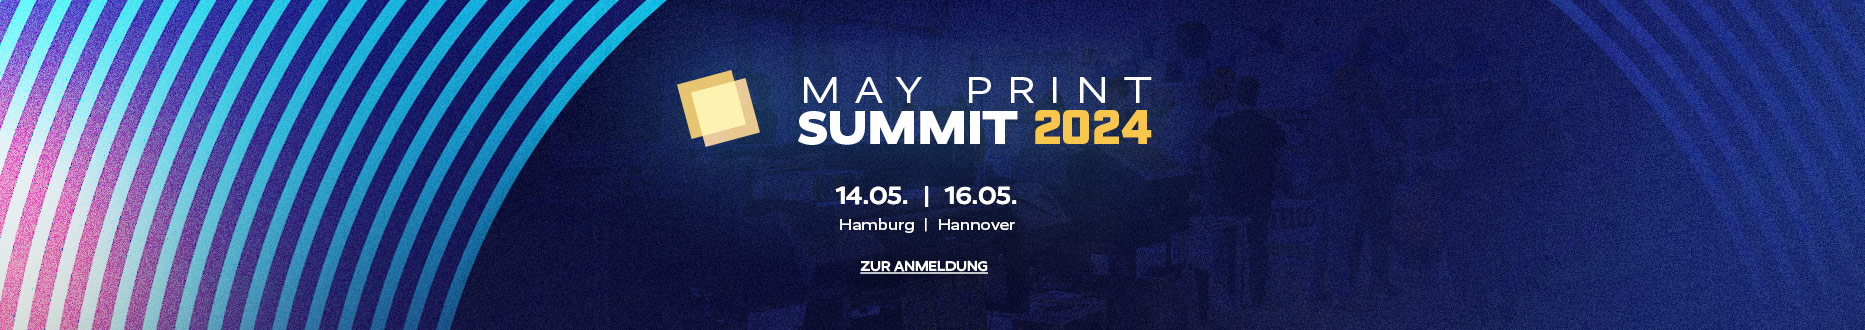 May Print Summit 2024